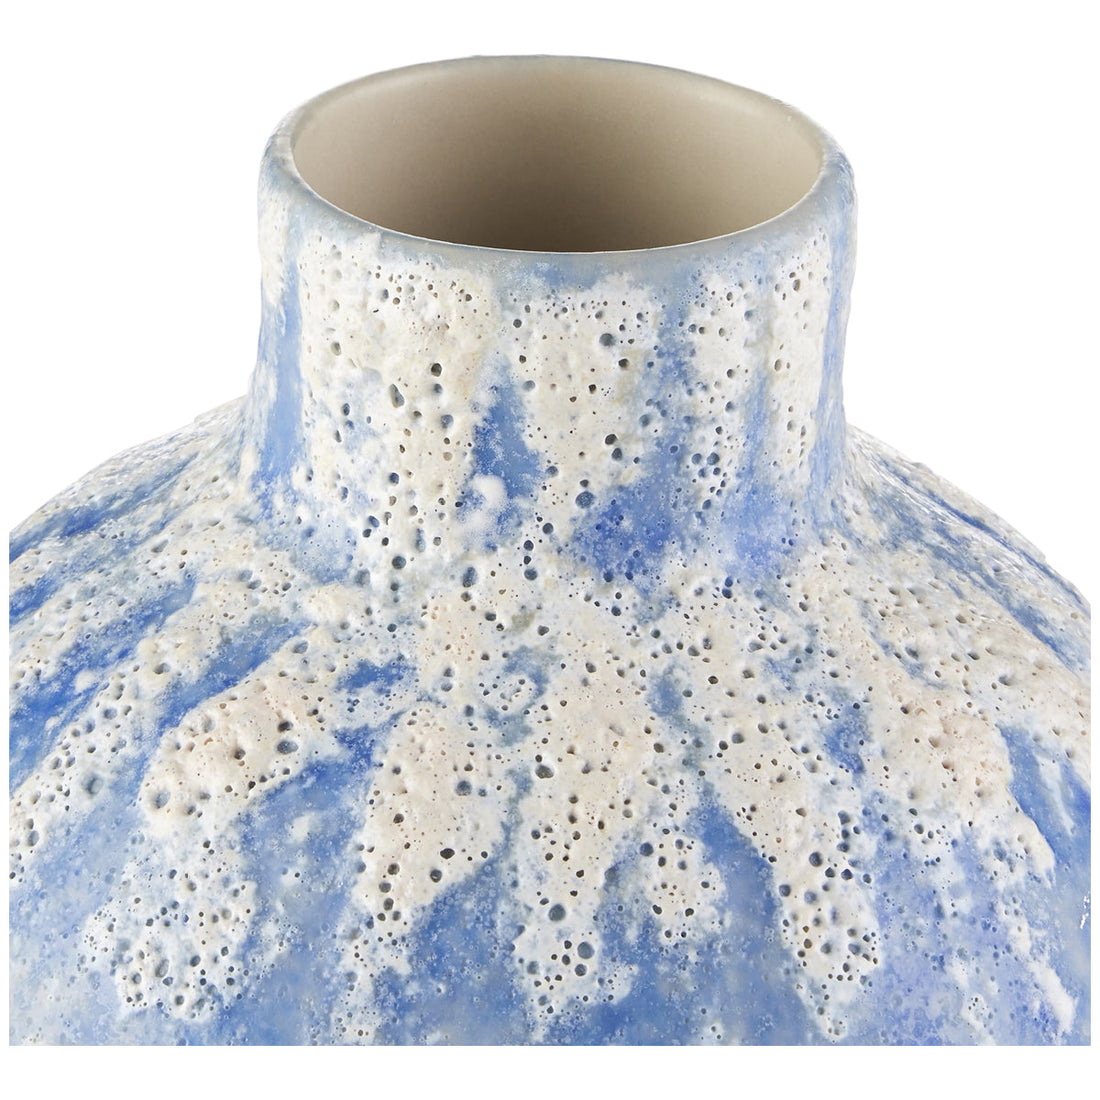 Currey and Company Paros Blue Vase, 4-Piece Set